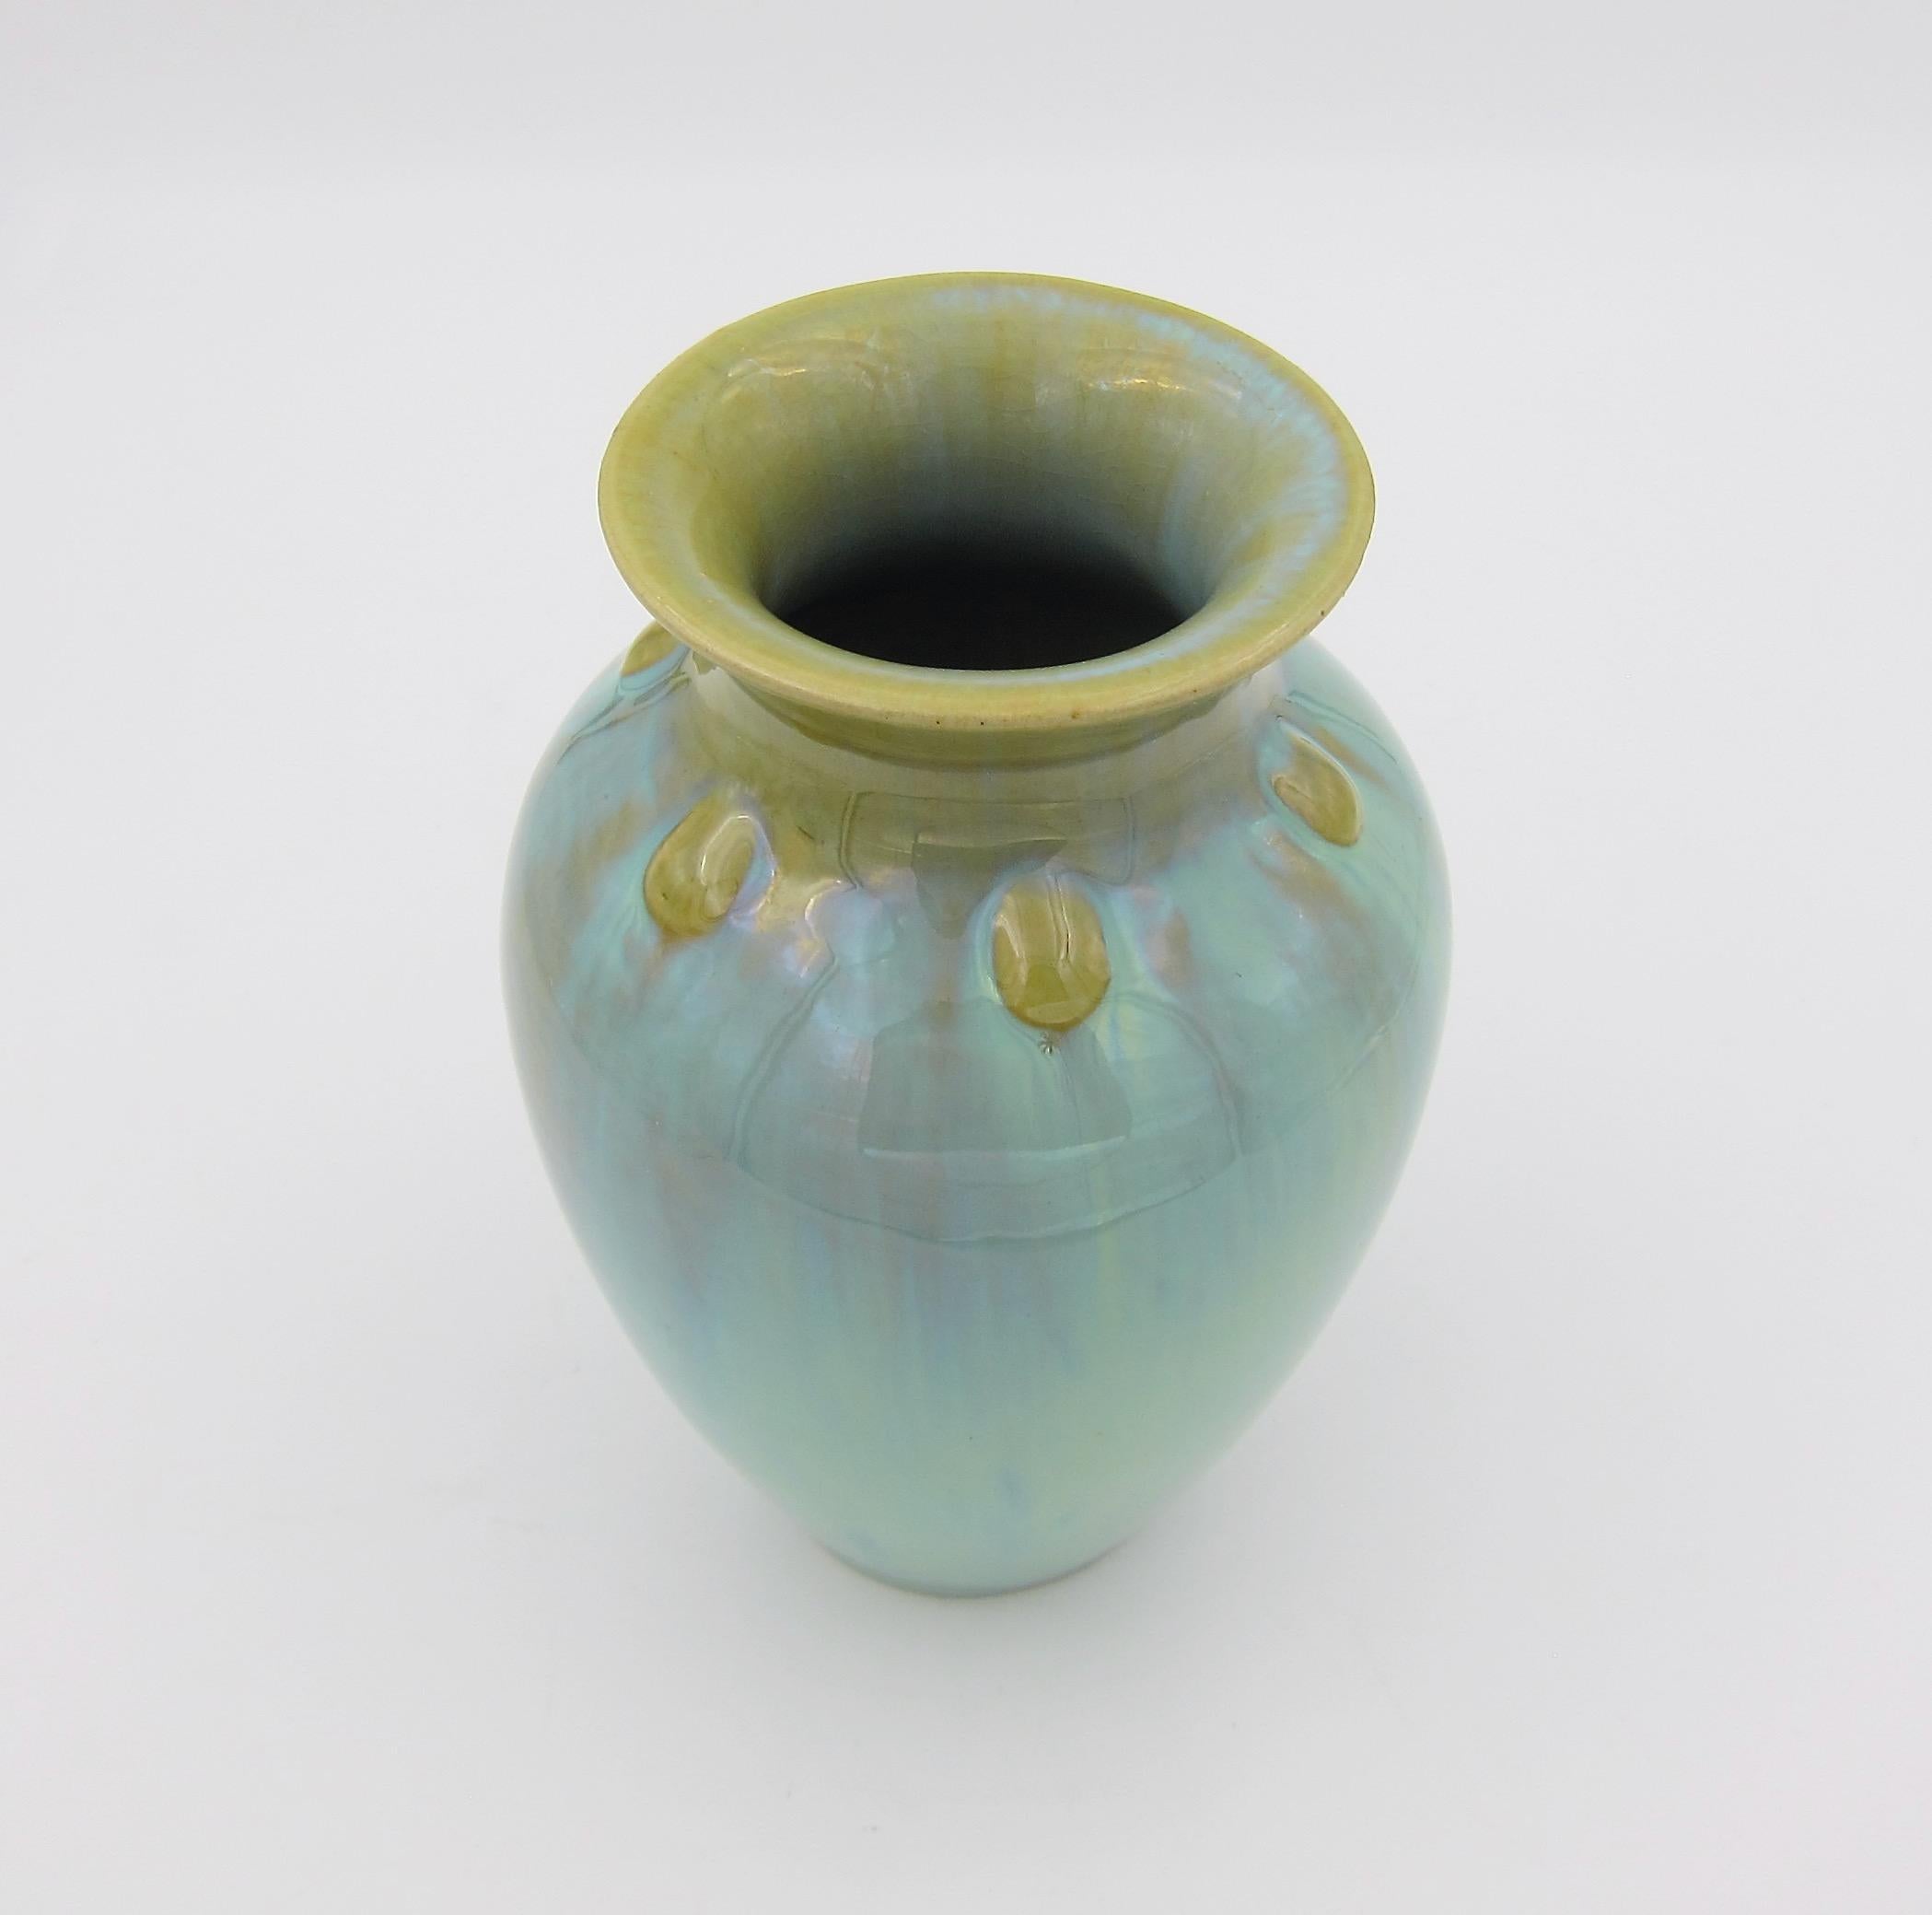 American Vintage Fulper Pottery Vase with a Flambé Glaze